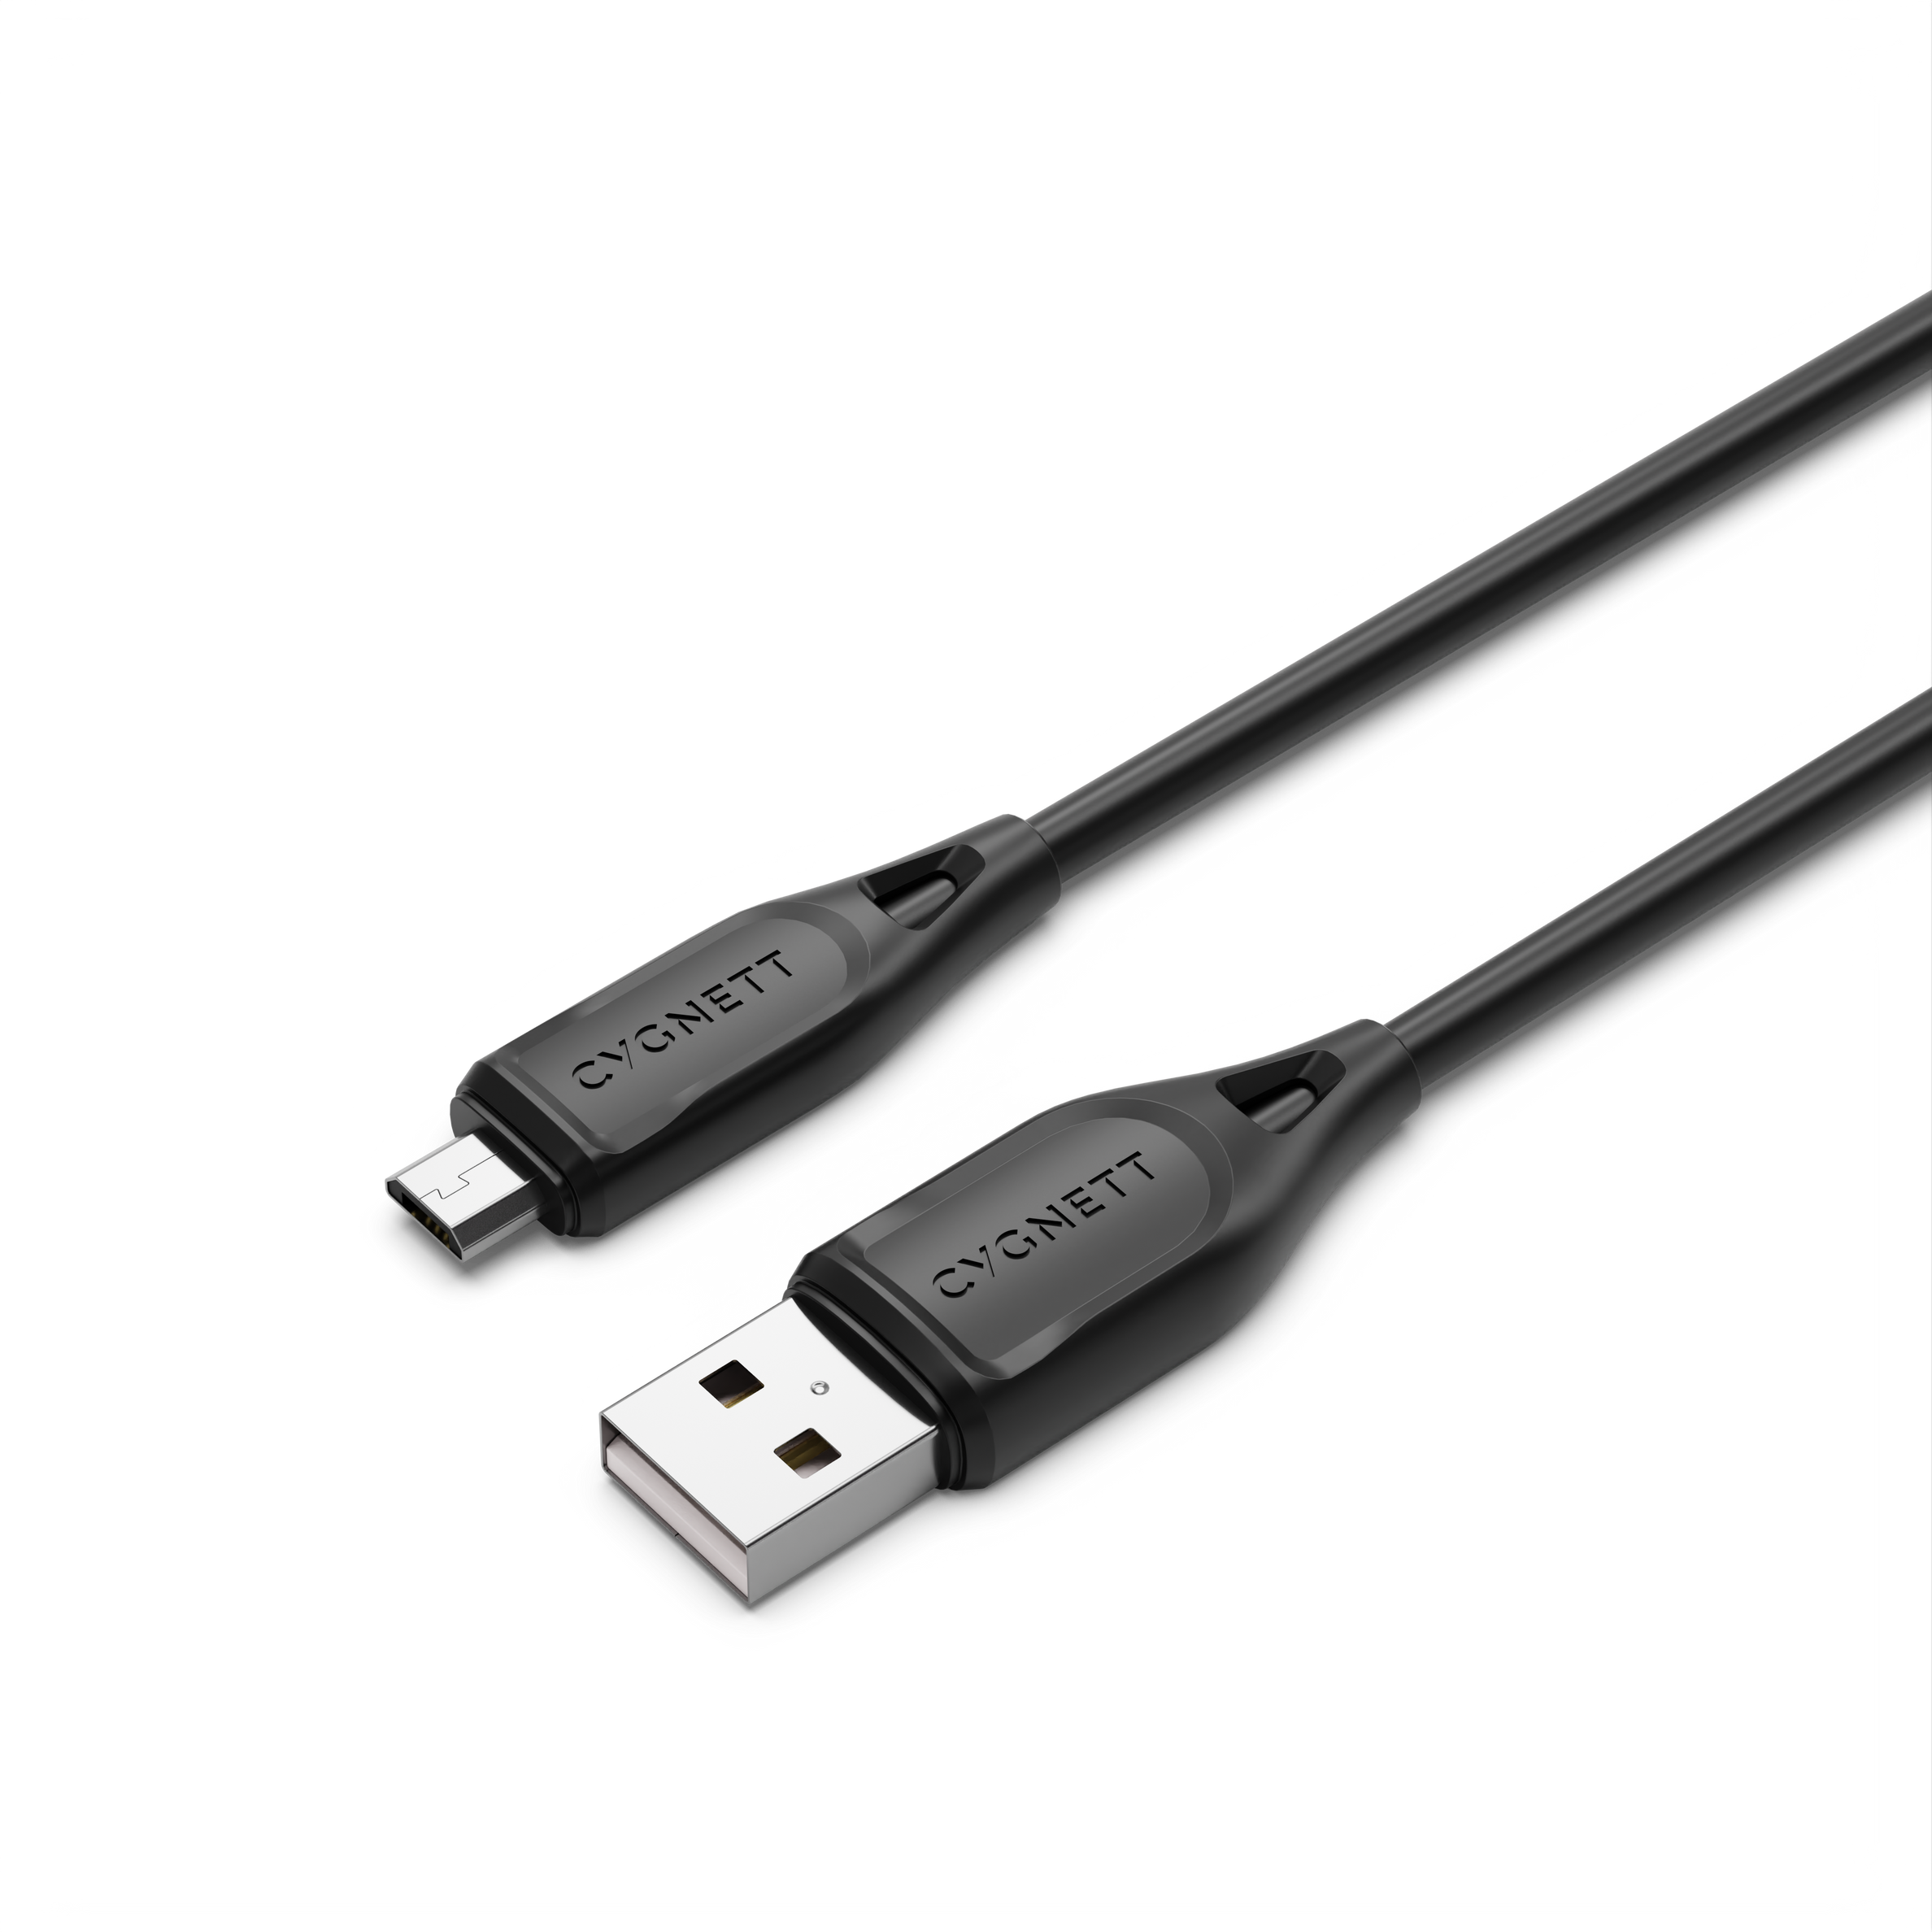 Micro to USB-A Cable 2m - Black - Cygnett (AU)